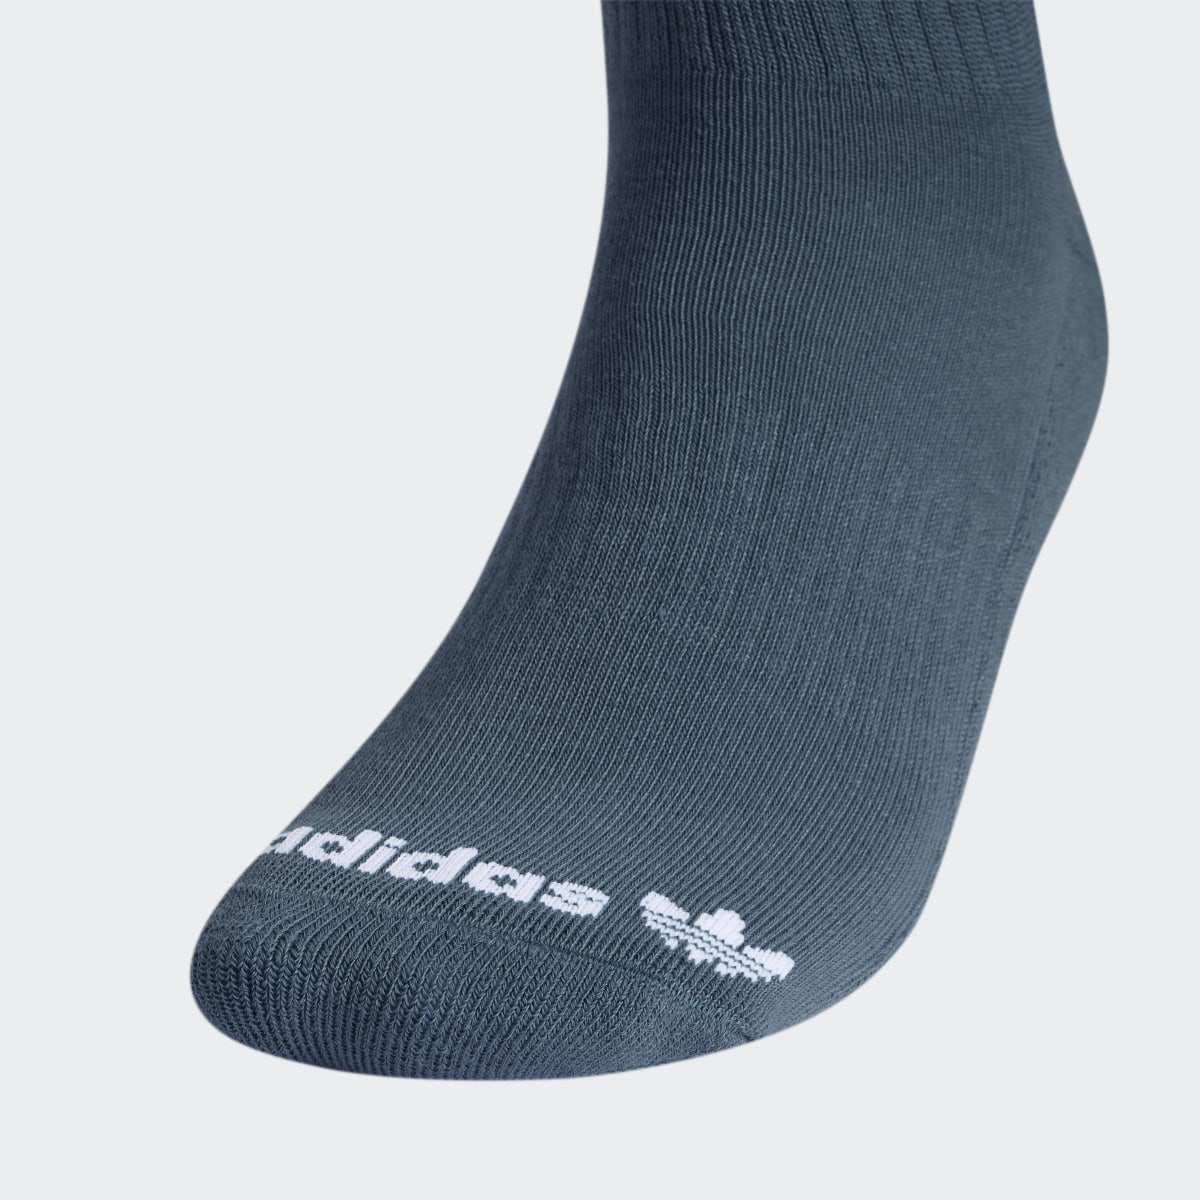 Adidas Trefoil Crew Socks 3 Pairs. 4